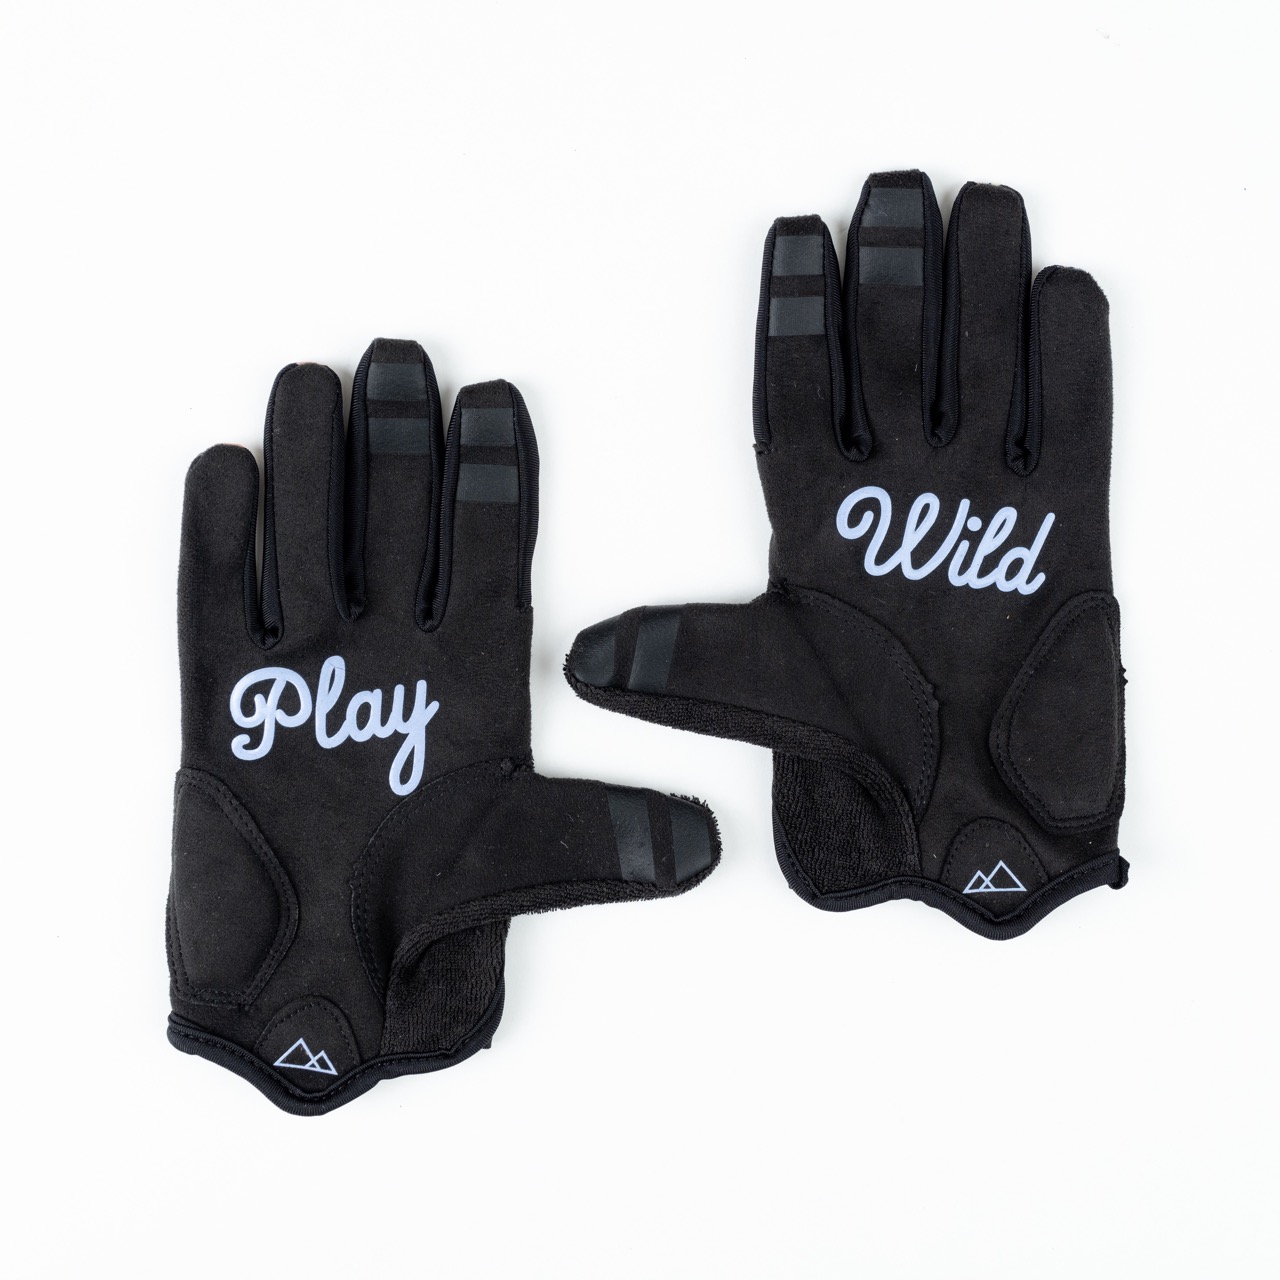 Wild Rye gloves